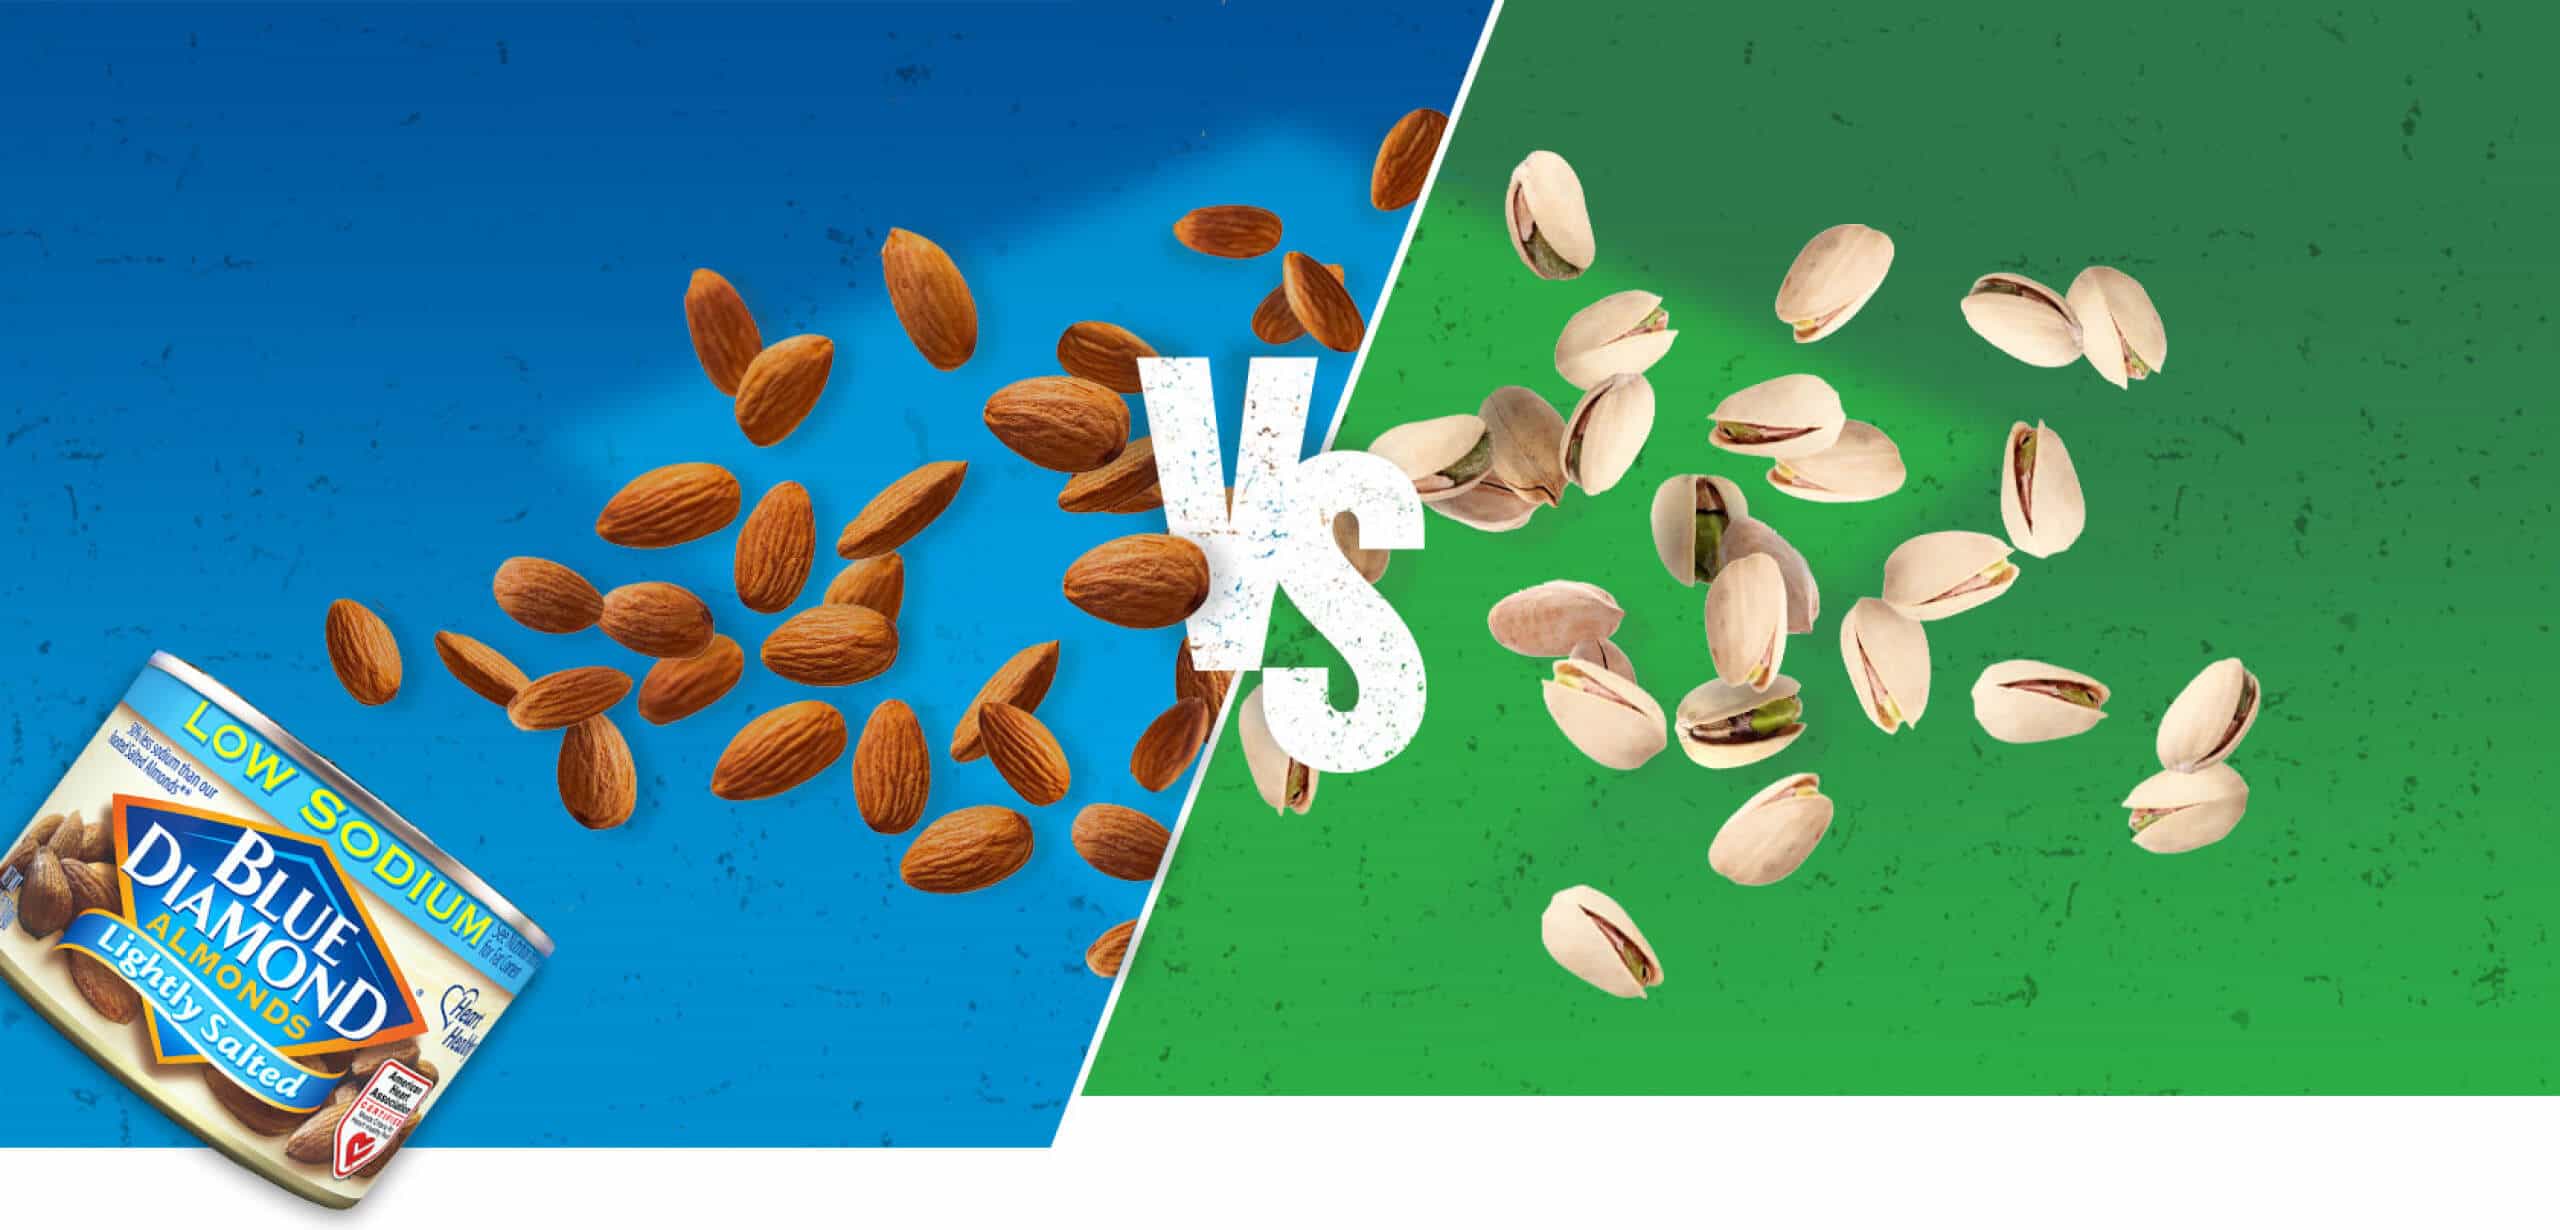 Almonds VS Pistachios